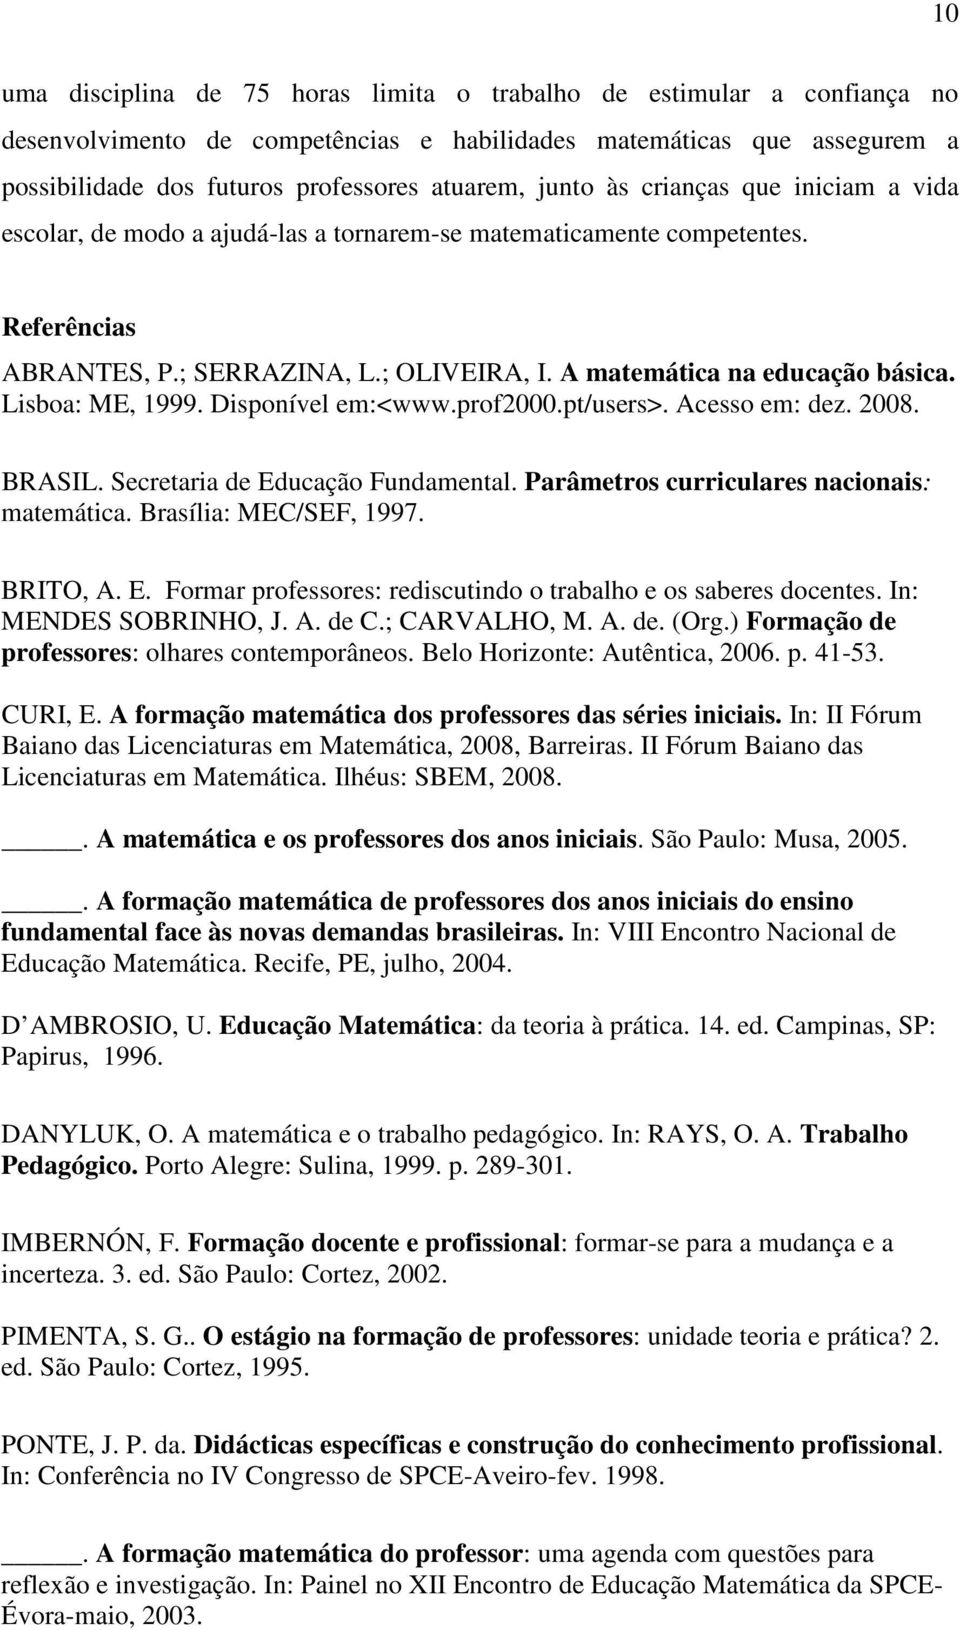 Lisboa: ME, 1999. Disponível em:<www.prof2000.pt/users>. Acesso em: dez. 2008. BRASIL. Secretaria de Educação Fundamental. Parâmetros curriculares nacionais: matemática. Brasília: MEC/SEF, 1997.